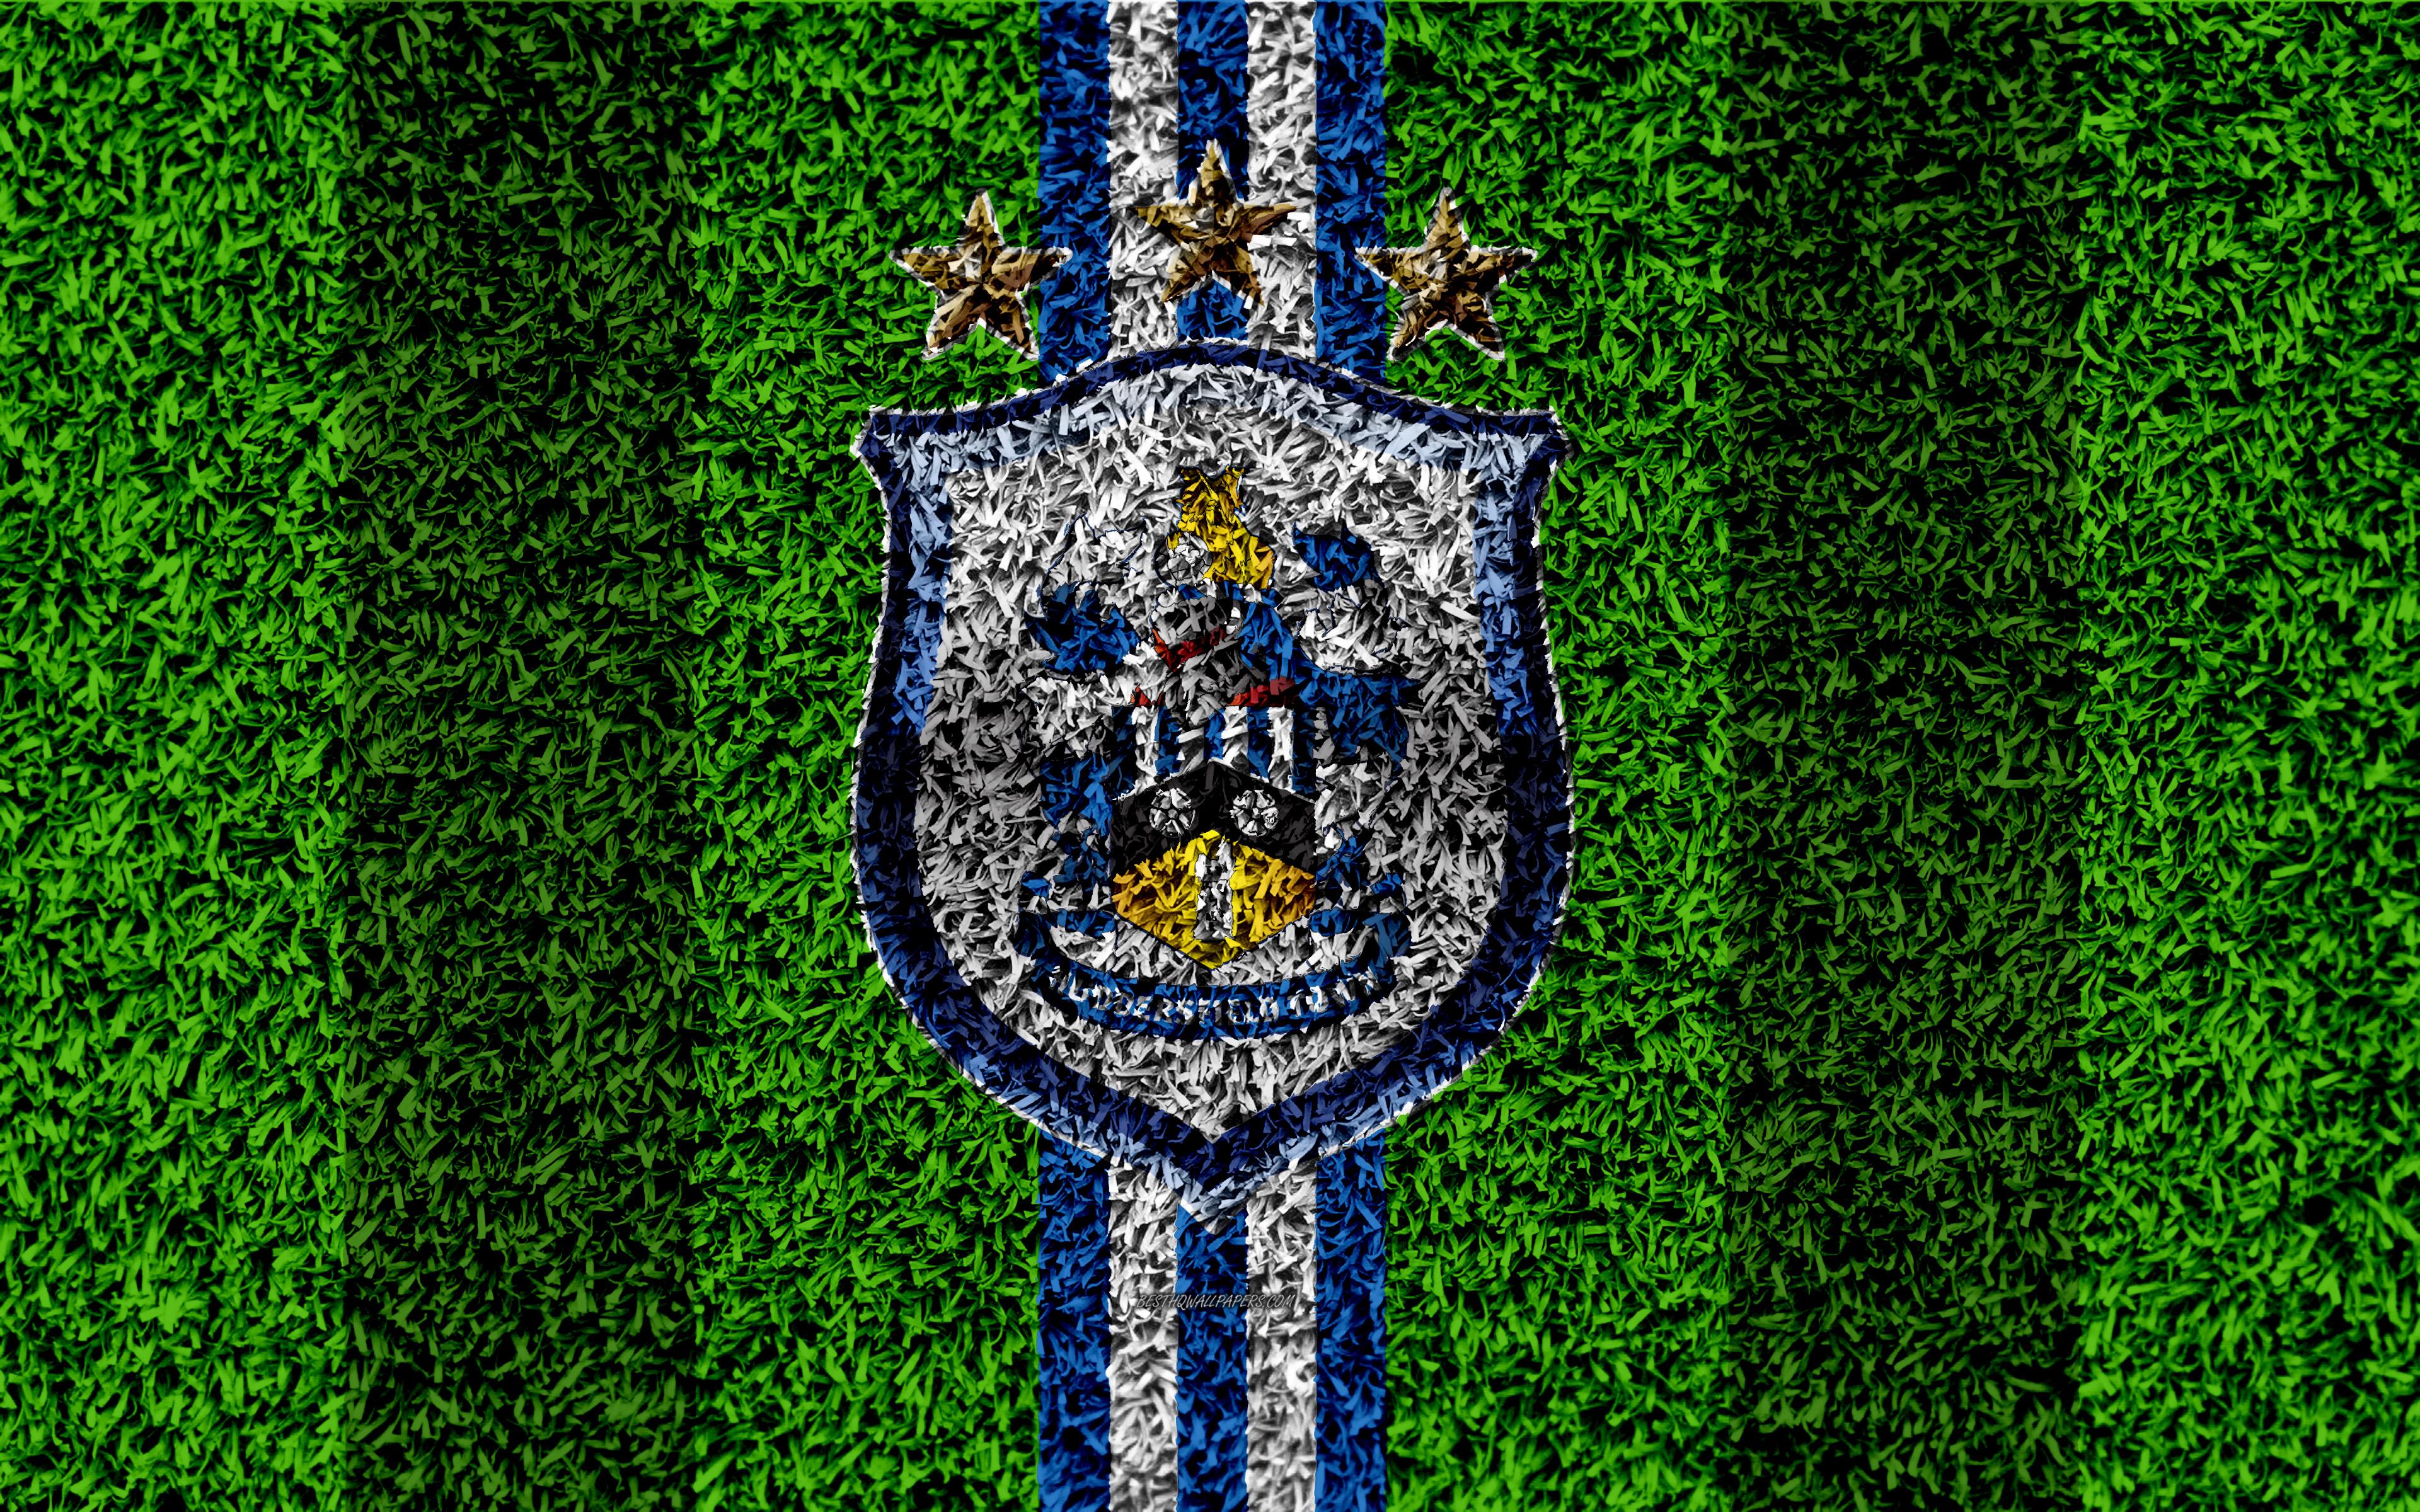 Download wallpaper Huddersfield Town AFC, 4k, football lawn, emblem